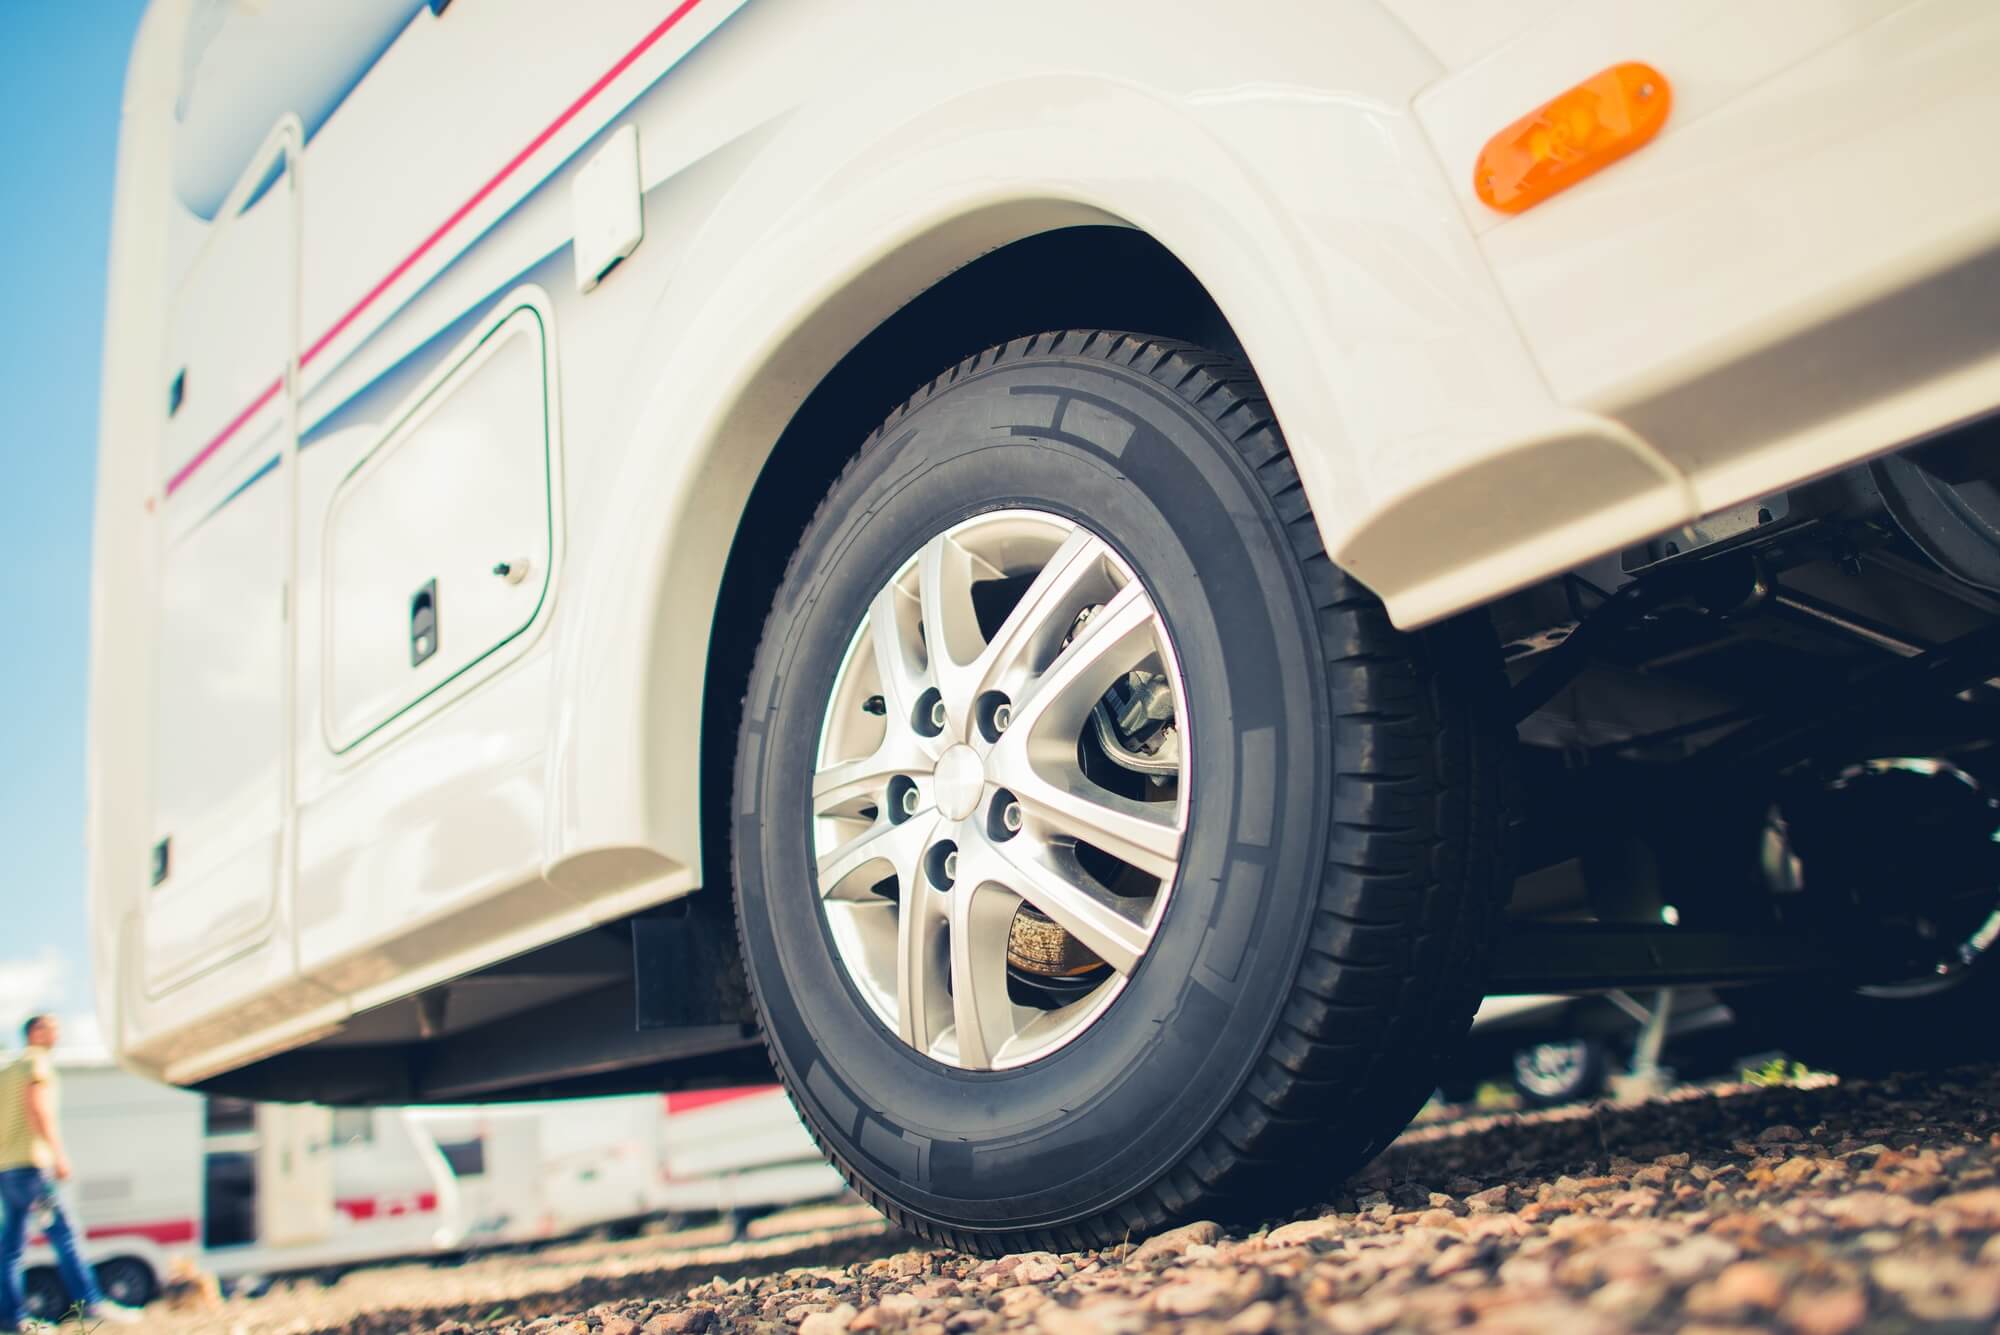 8690円 公式通販 Explore Land Tire Covers 4 Pack - Tough Wheel Protector for Truck SUV